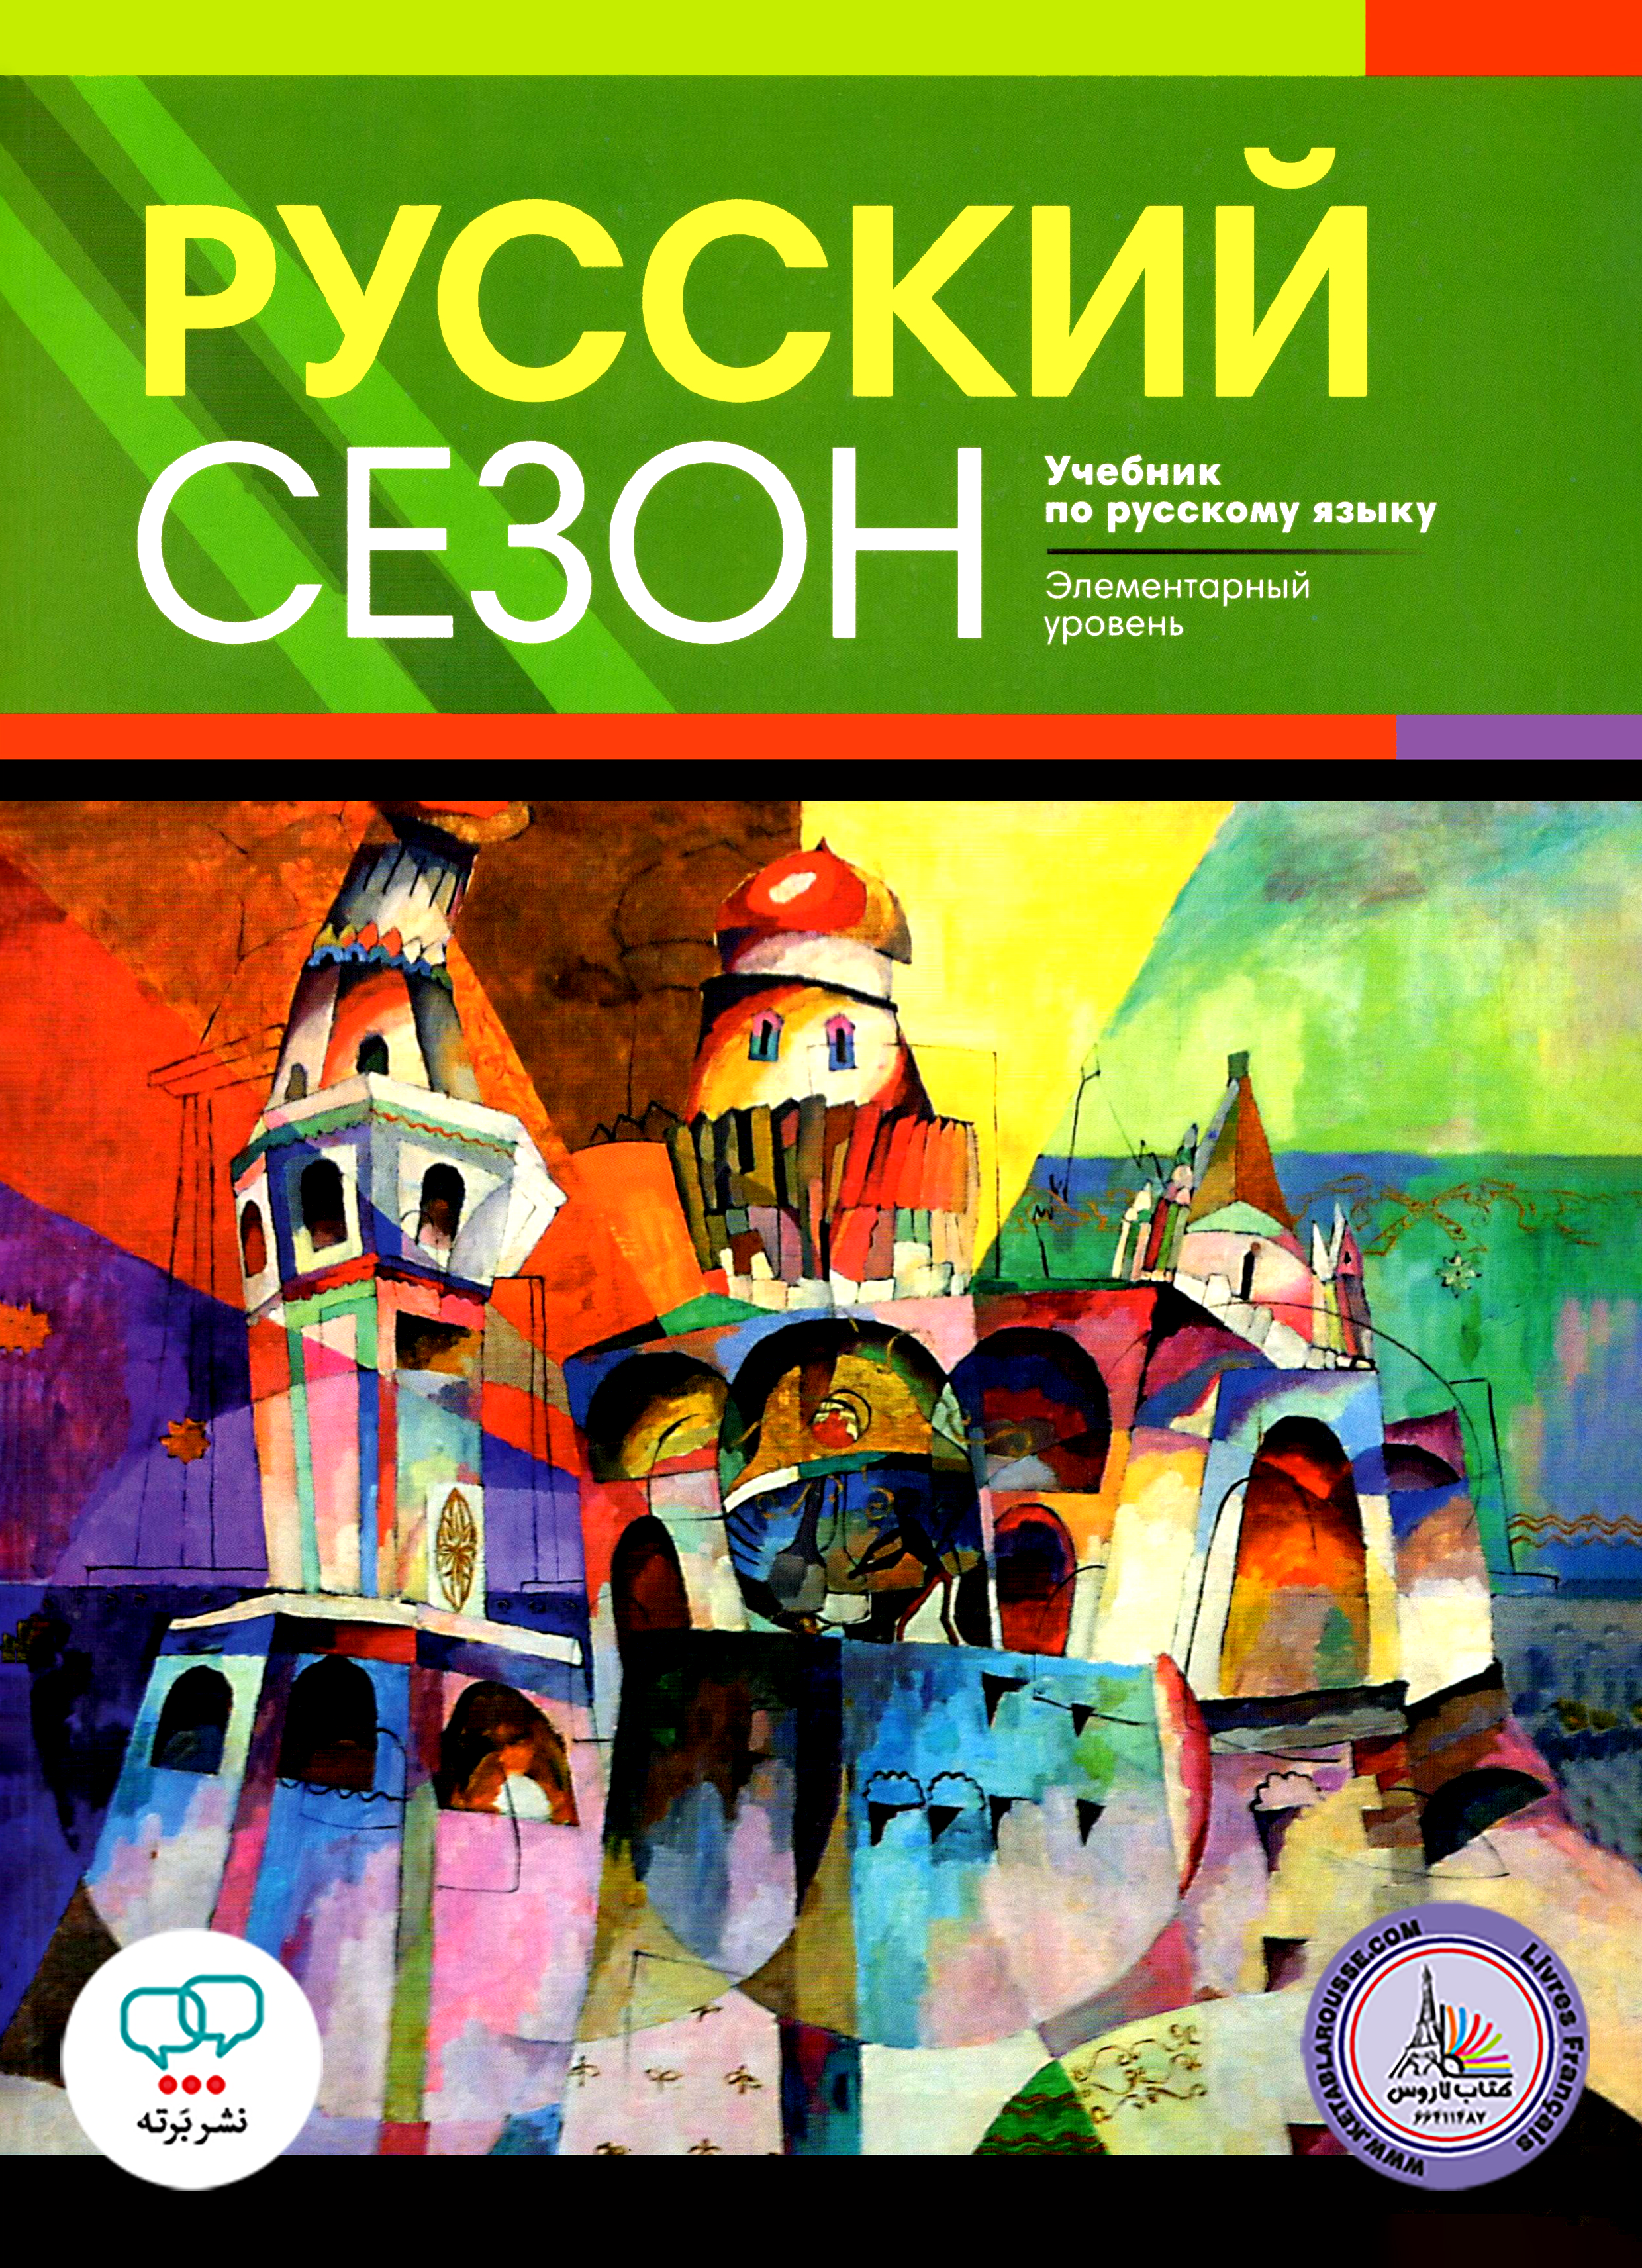 کتاب آموزش زبان روسی روسکی سیزون Pyccknn Ce3oh